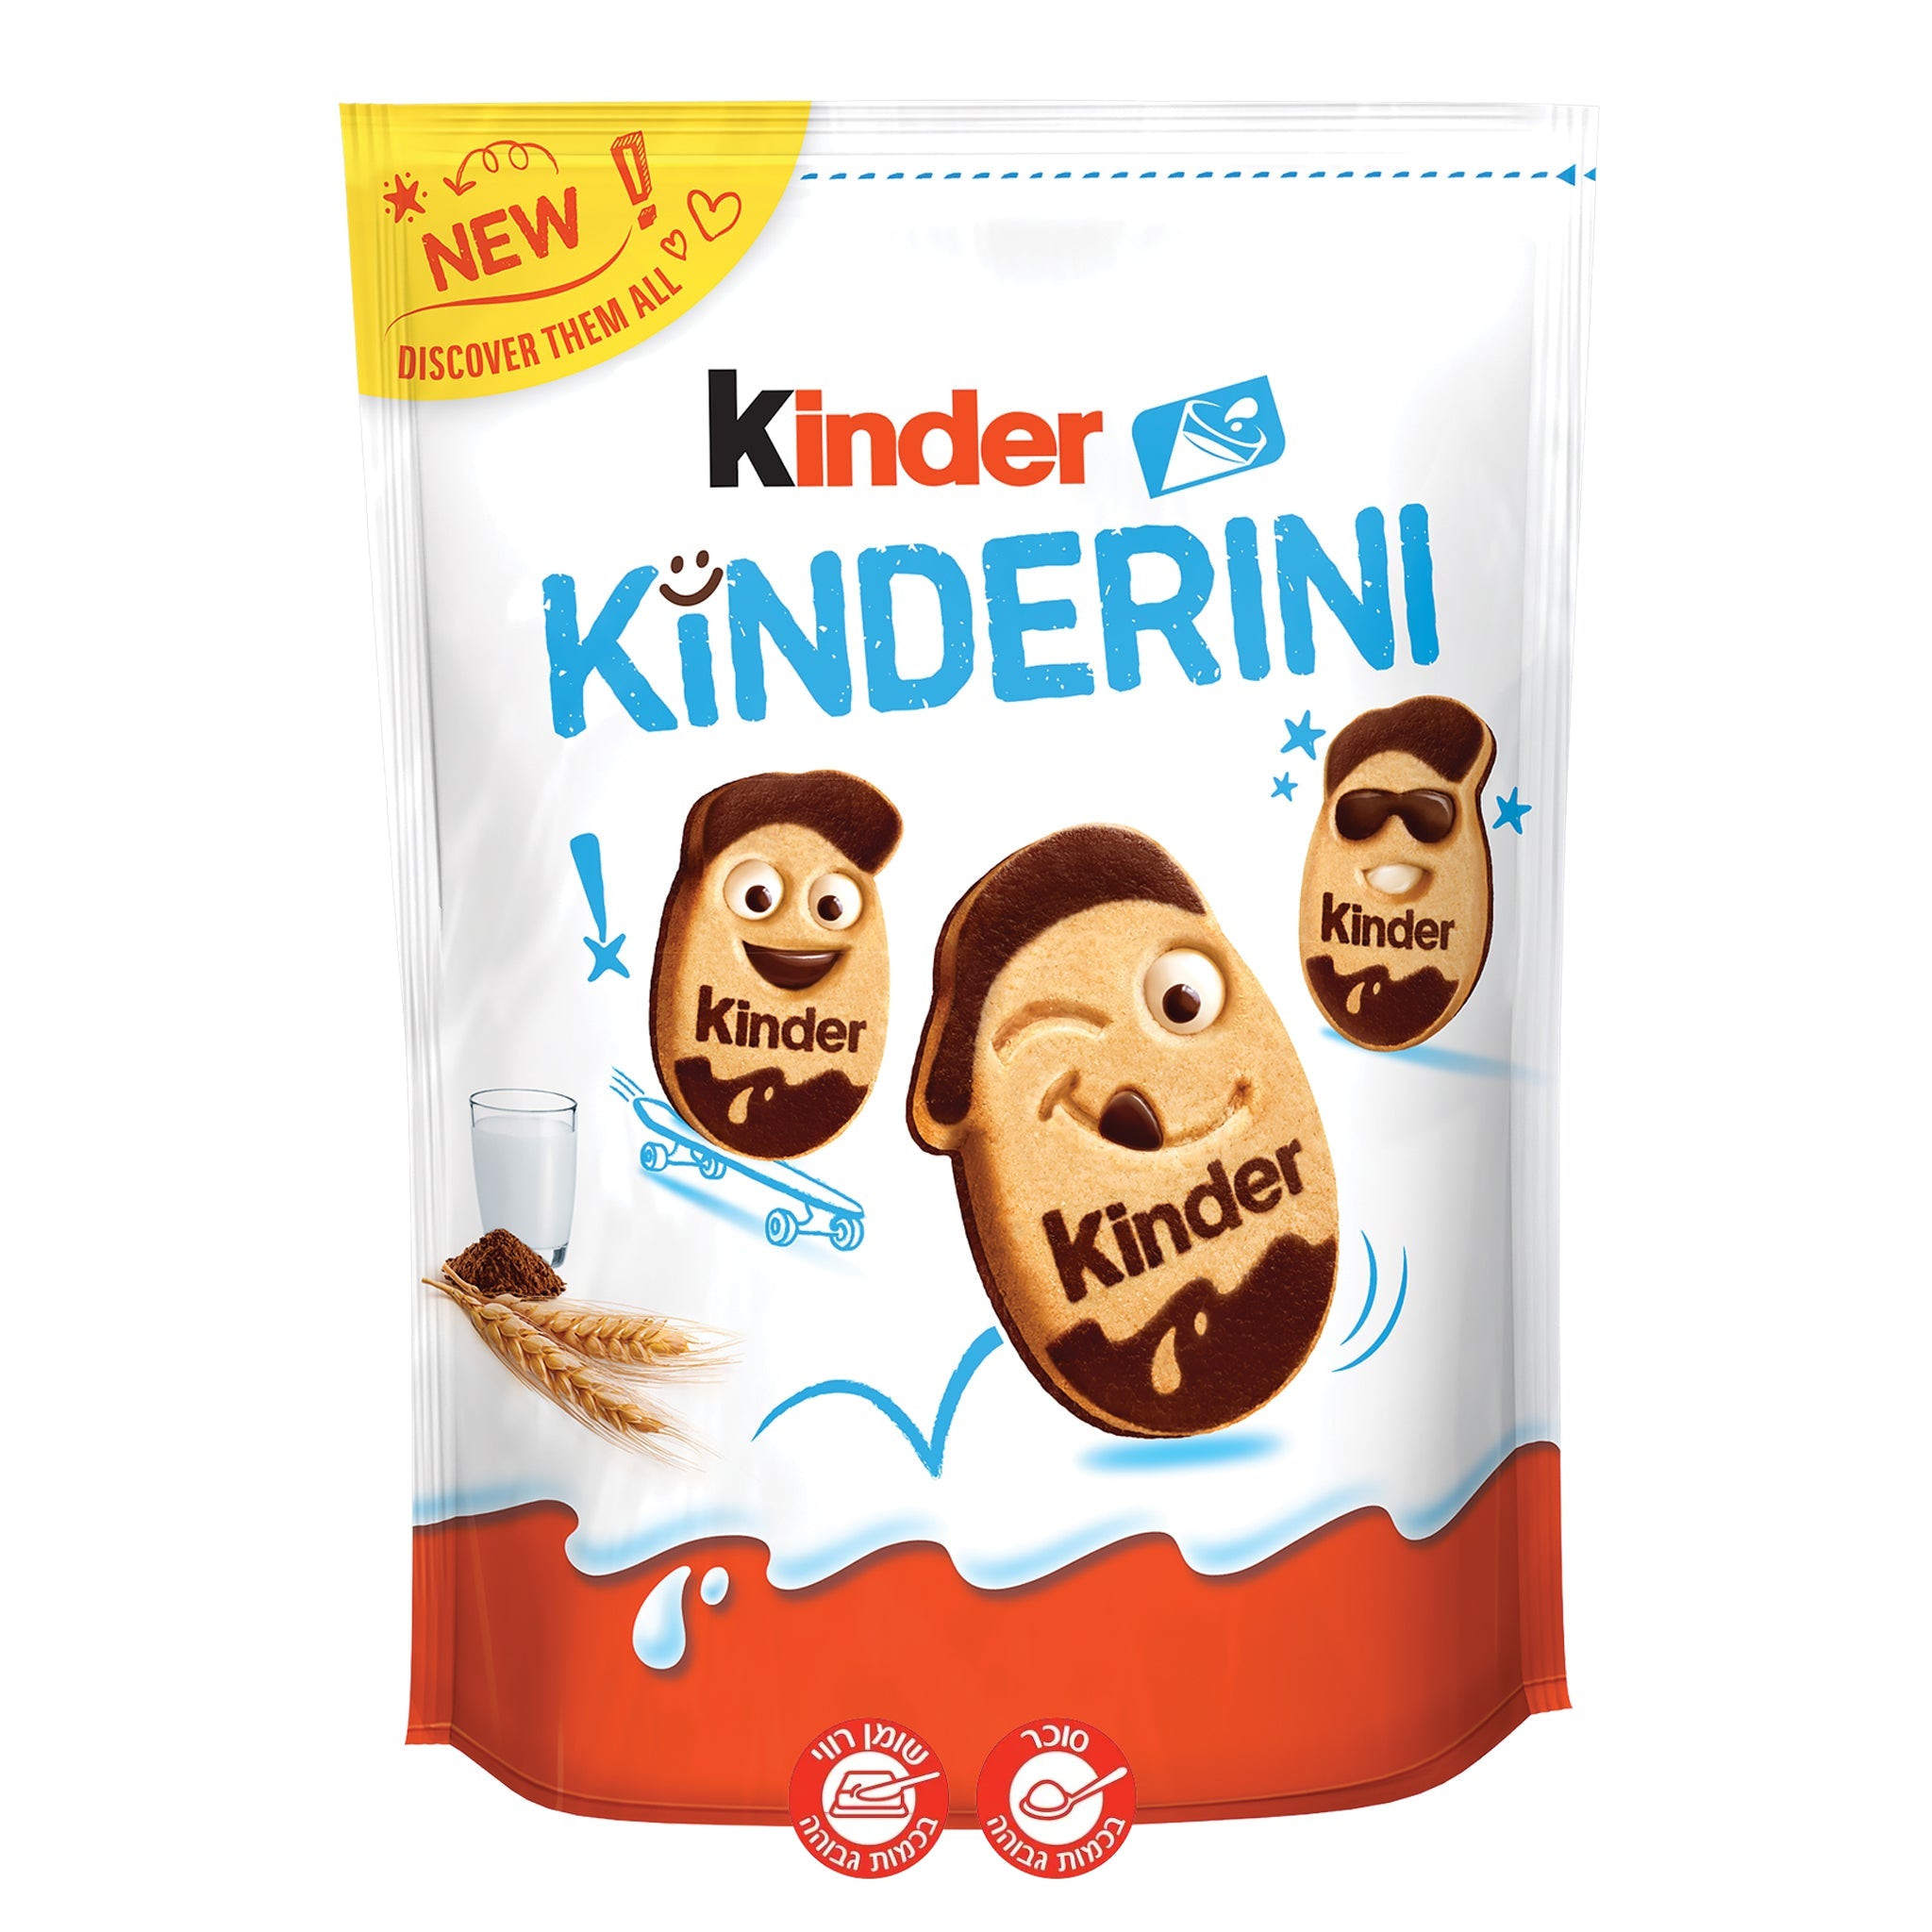 Kinderini Kinder Cookies - קינדריני עוגיות קינדר חדשות שוקולדים